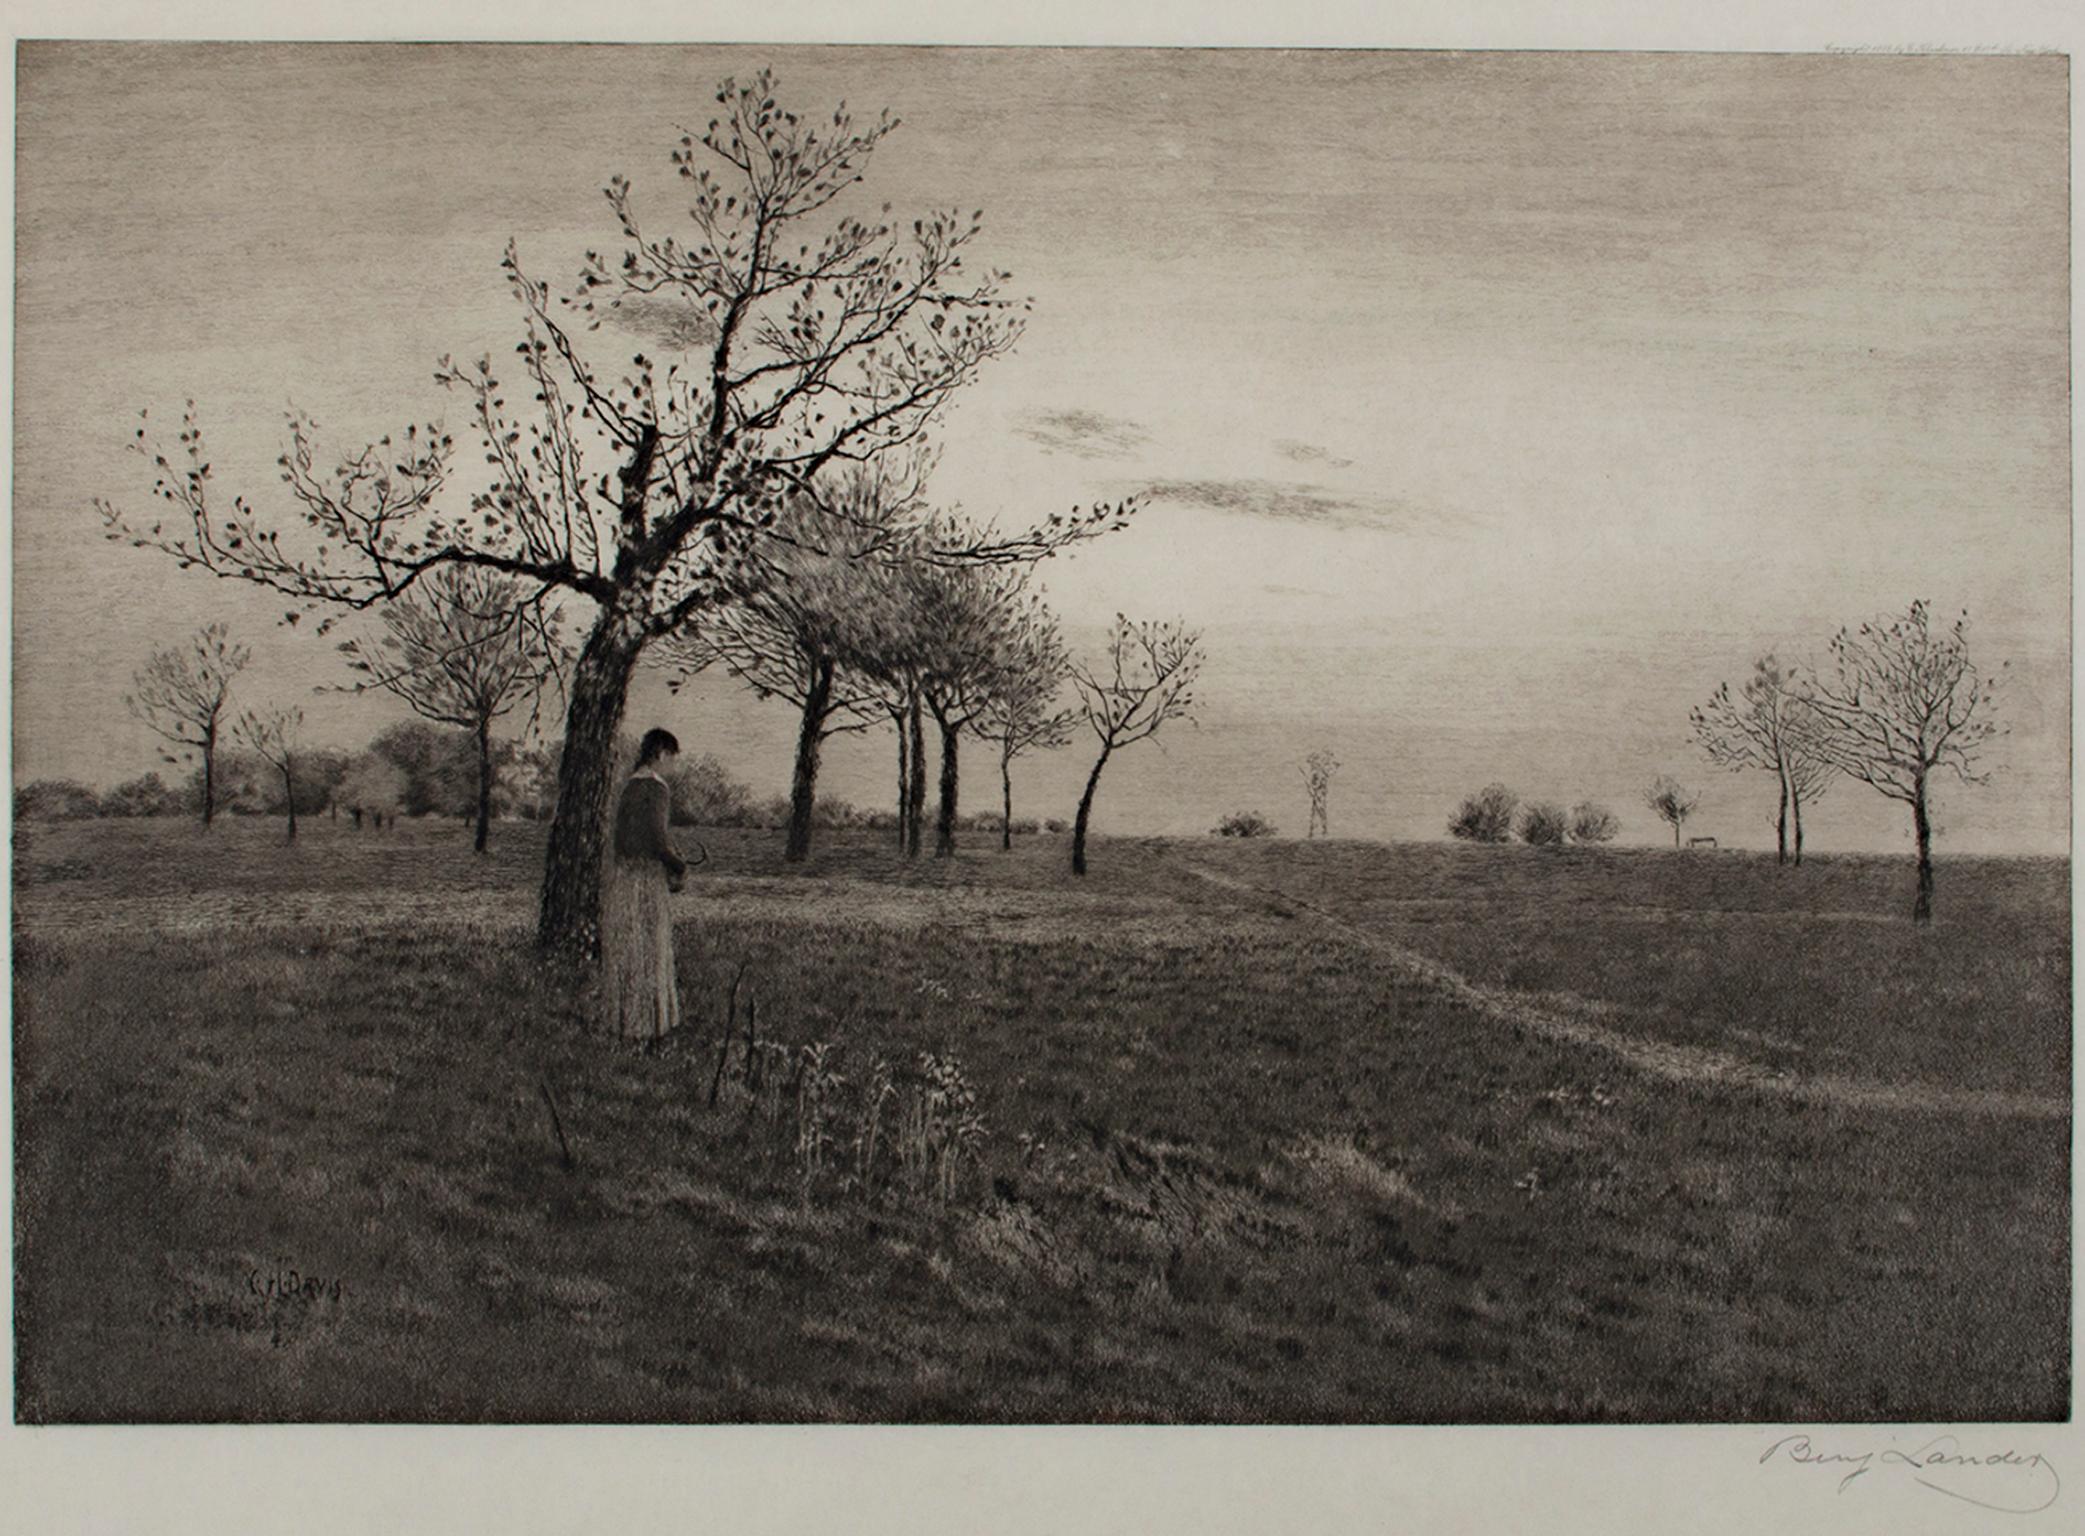 D. Landers, after Charles Harold Davis Landscape Print - "Homeward Bound, " Etching by D. Landers after a painting by Charles Harold Davis